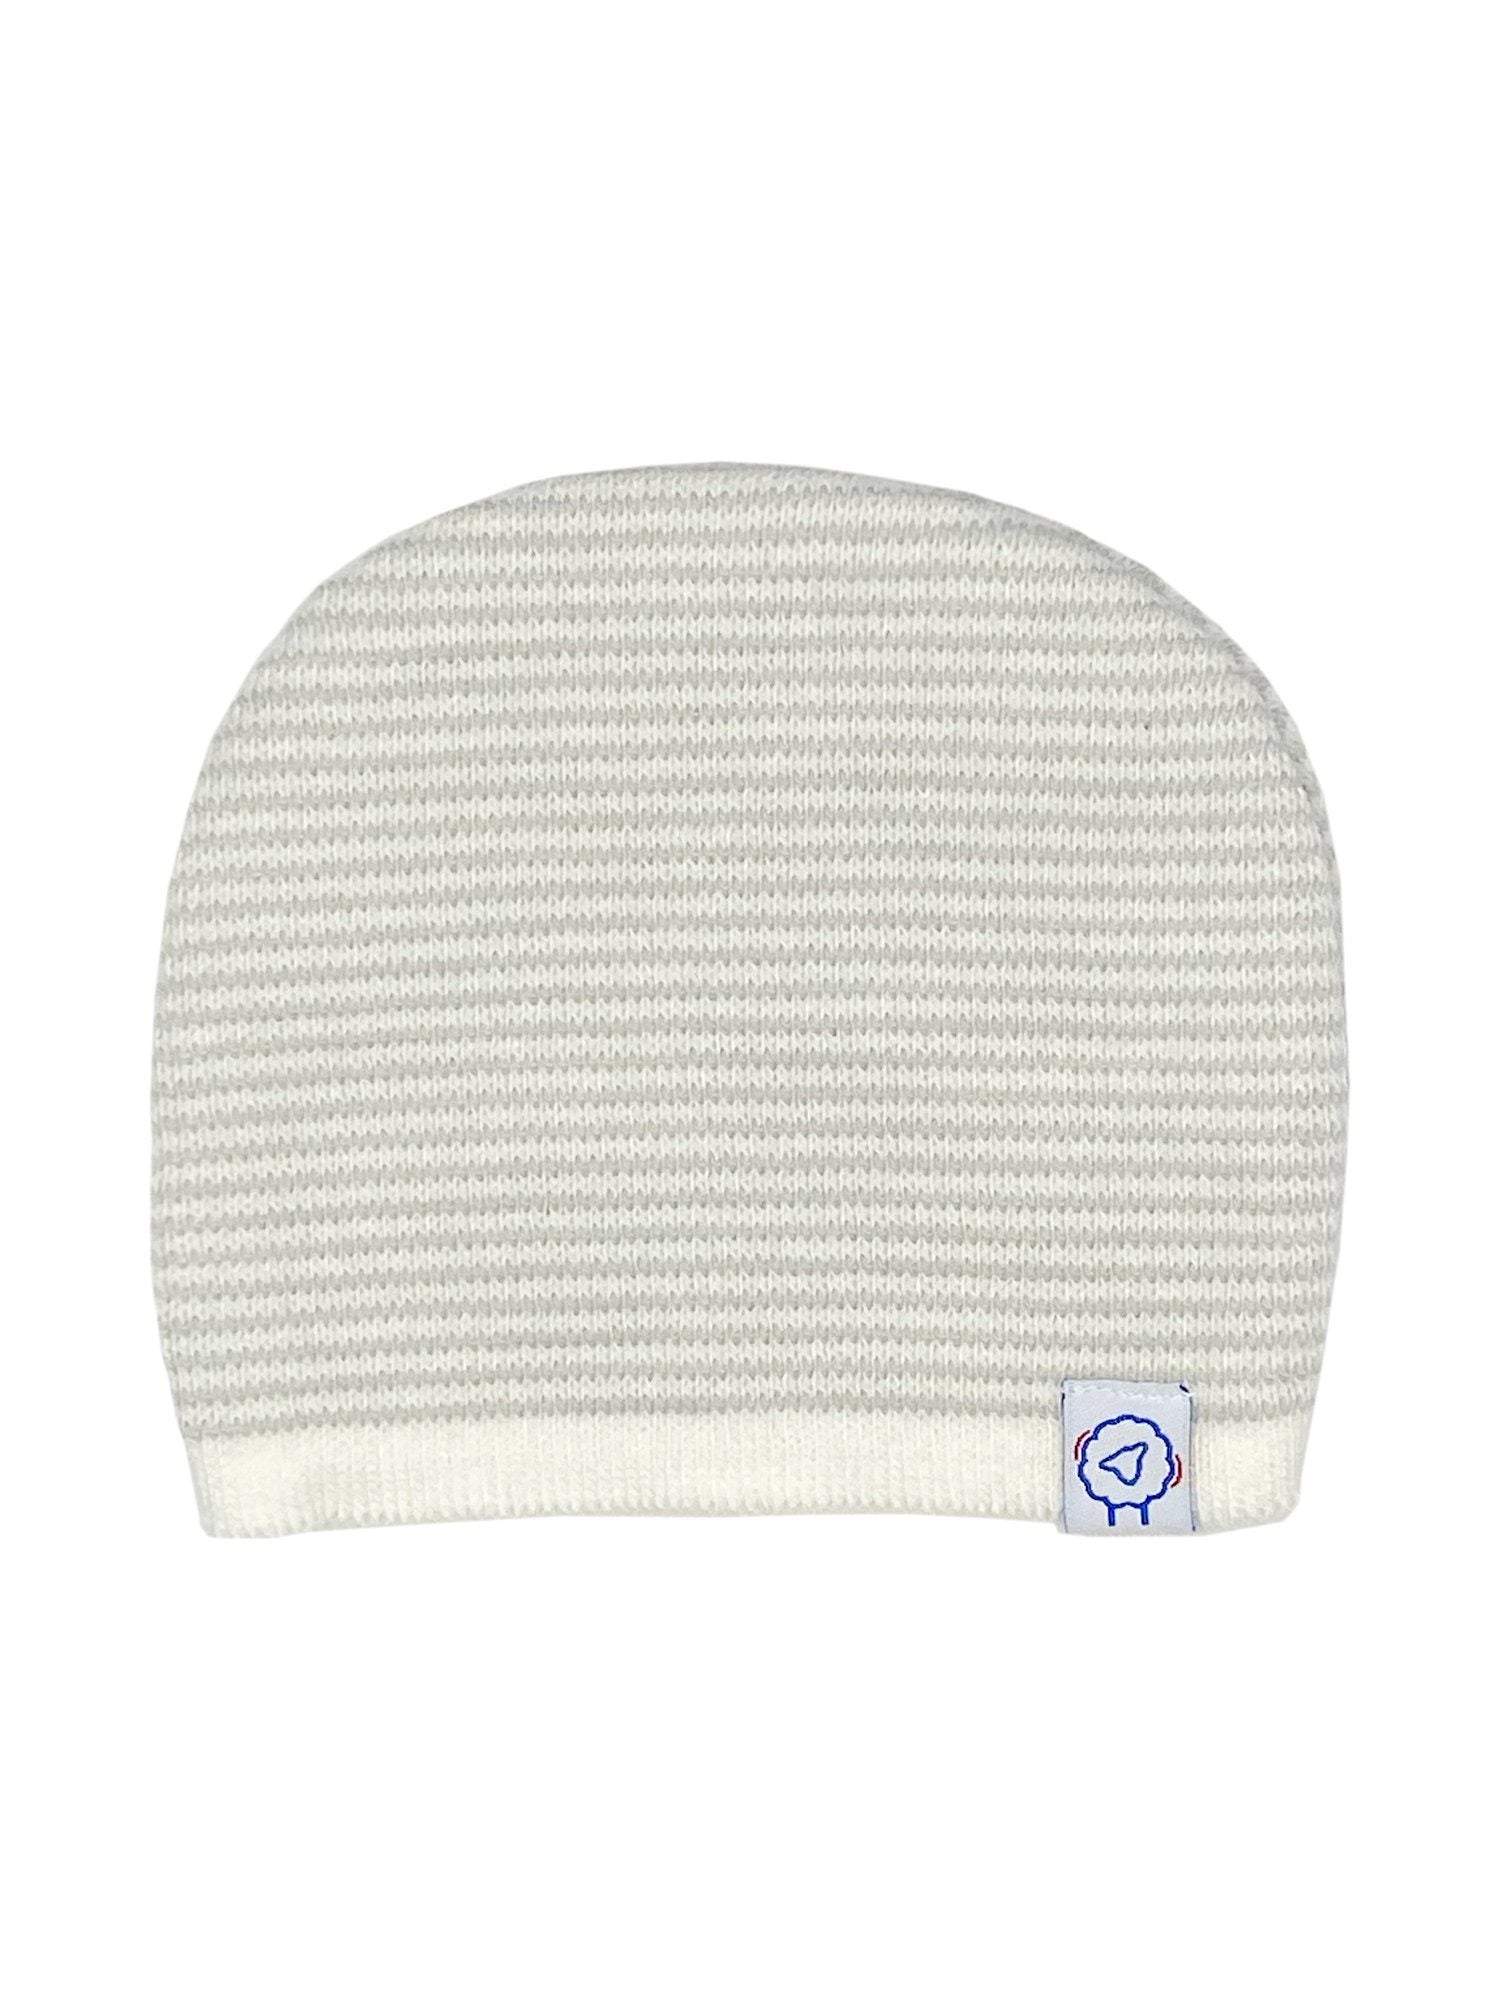 Knitted Hat - Light Grey Stripe Hat La Manufacture de Layette 